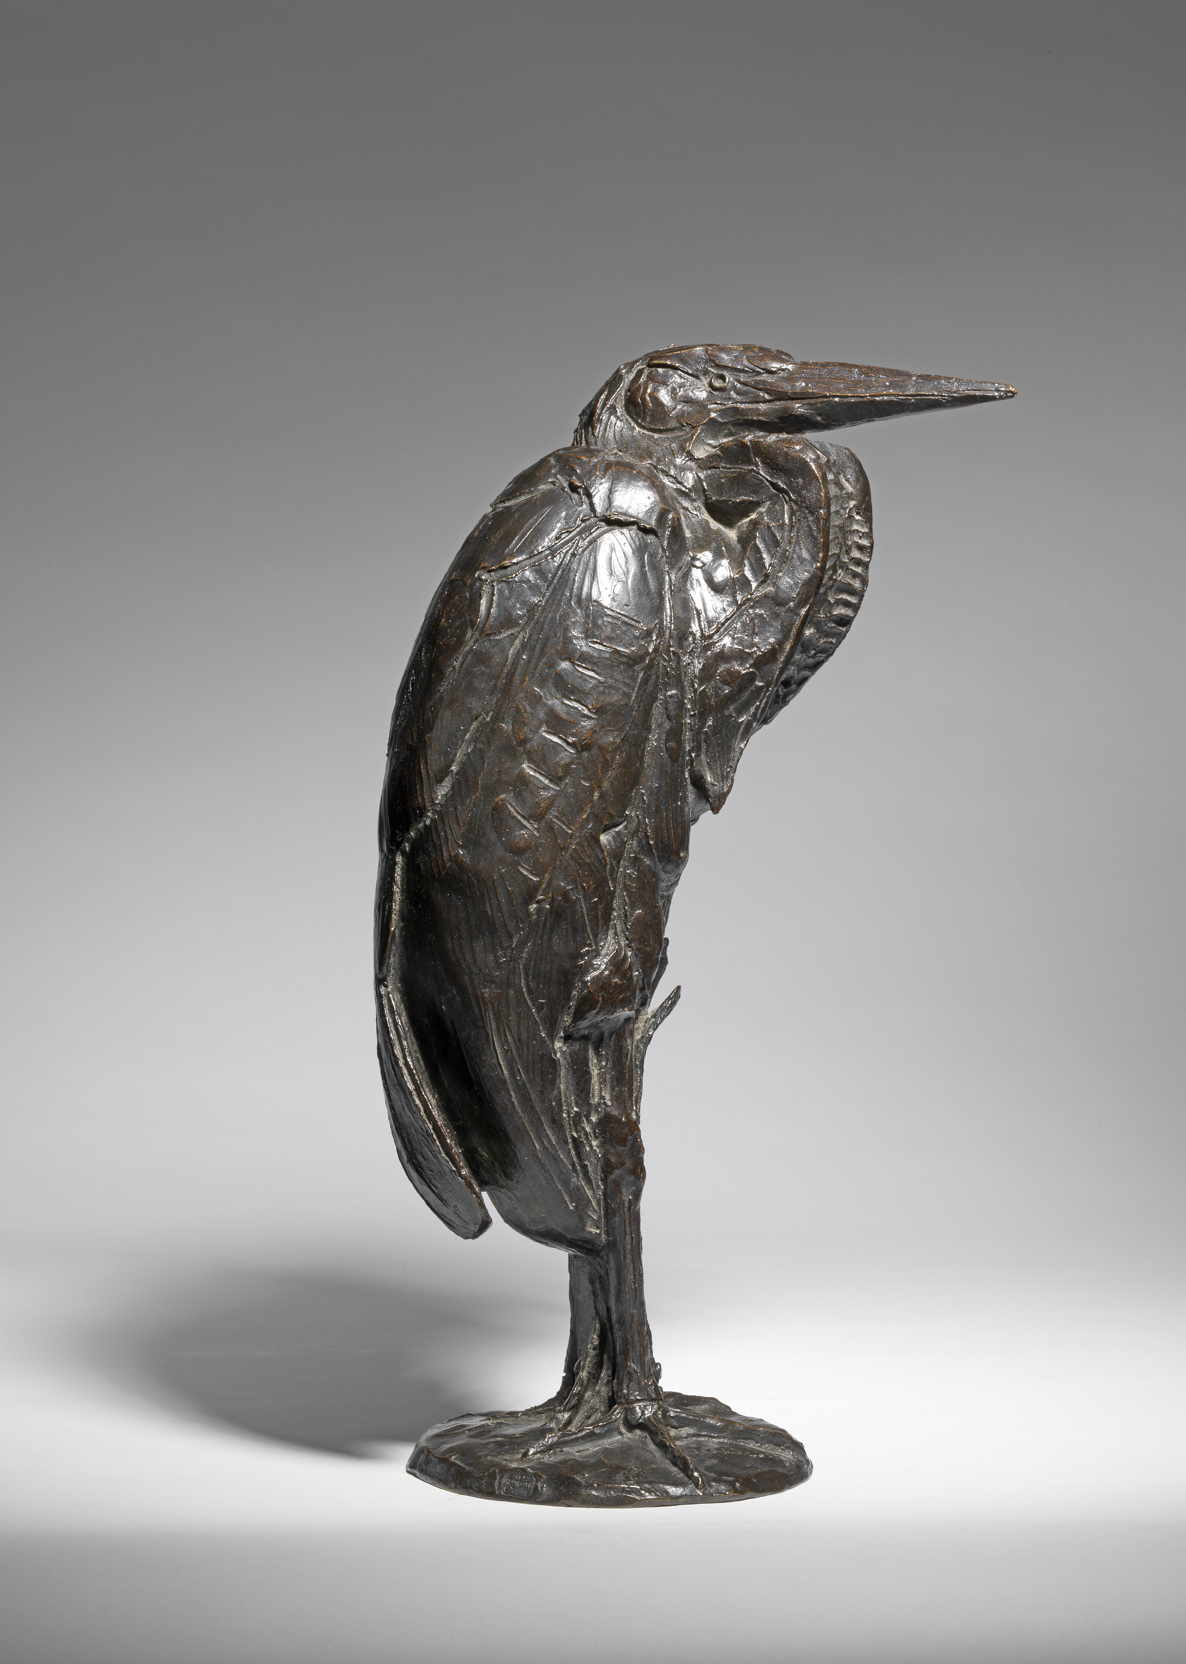 Standing Heron, c. 1925